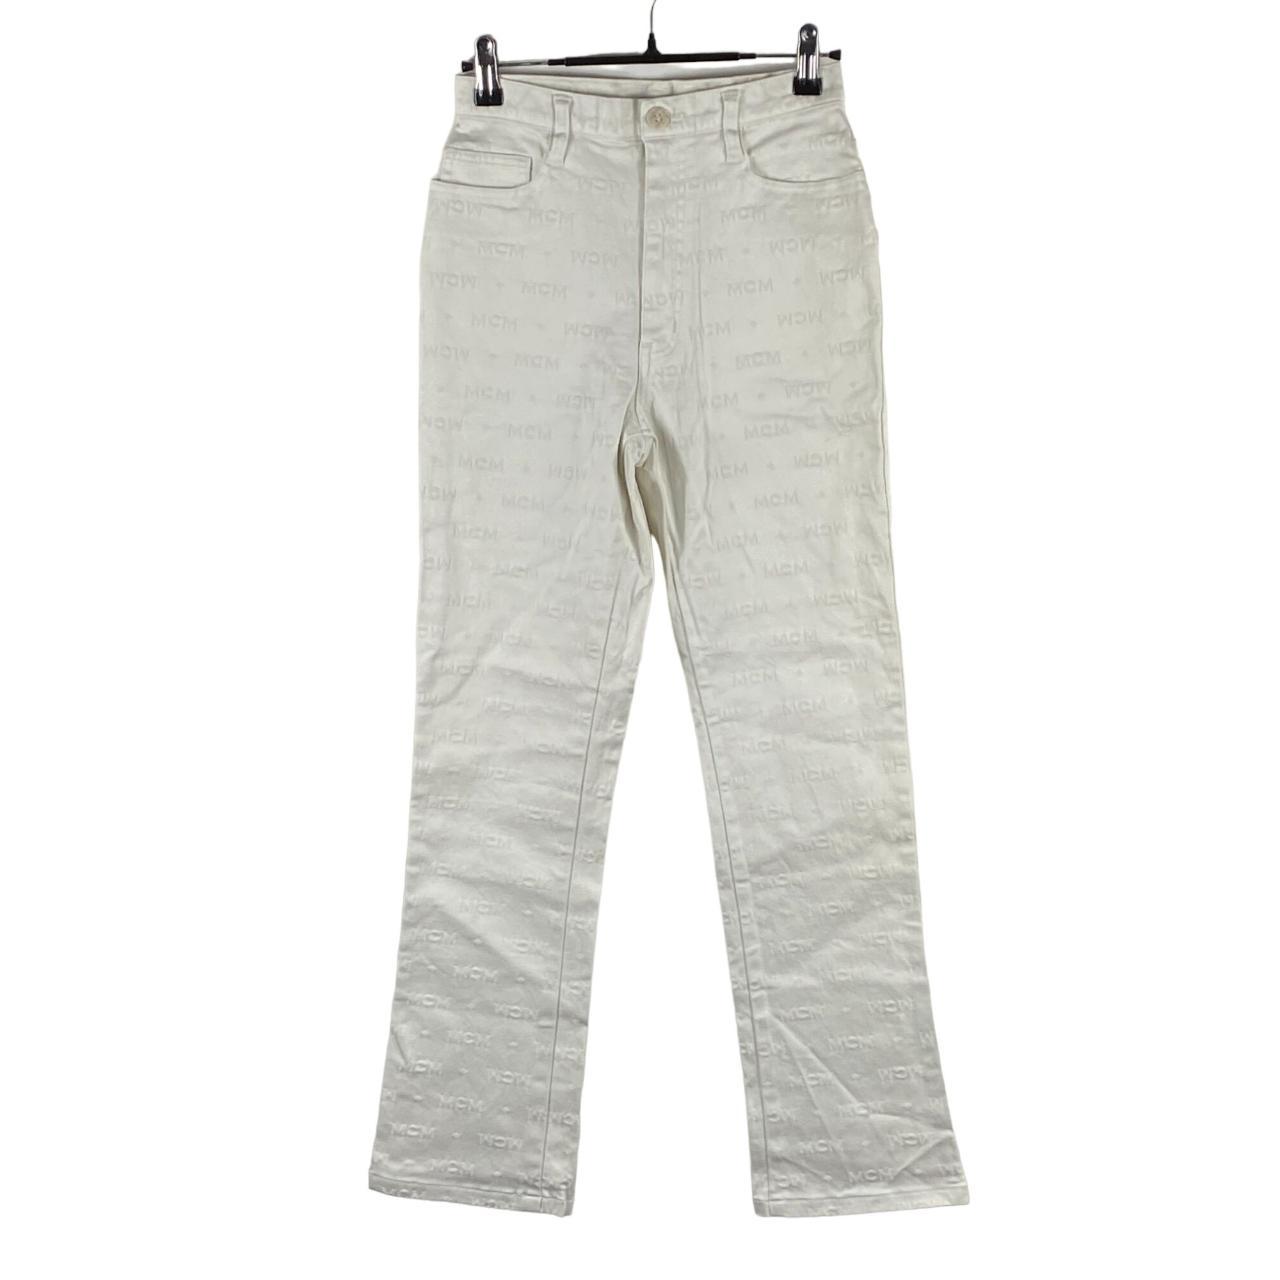 Vintage MCM Legere MCM Monogram Skinny Fit Jeans... - Depop